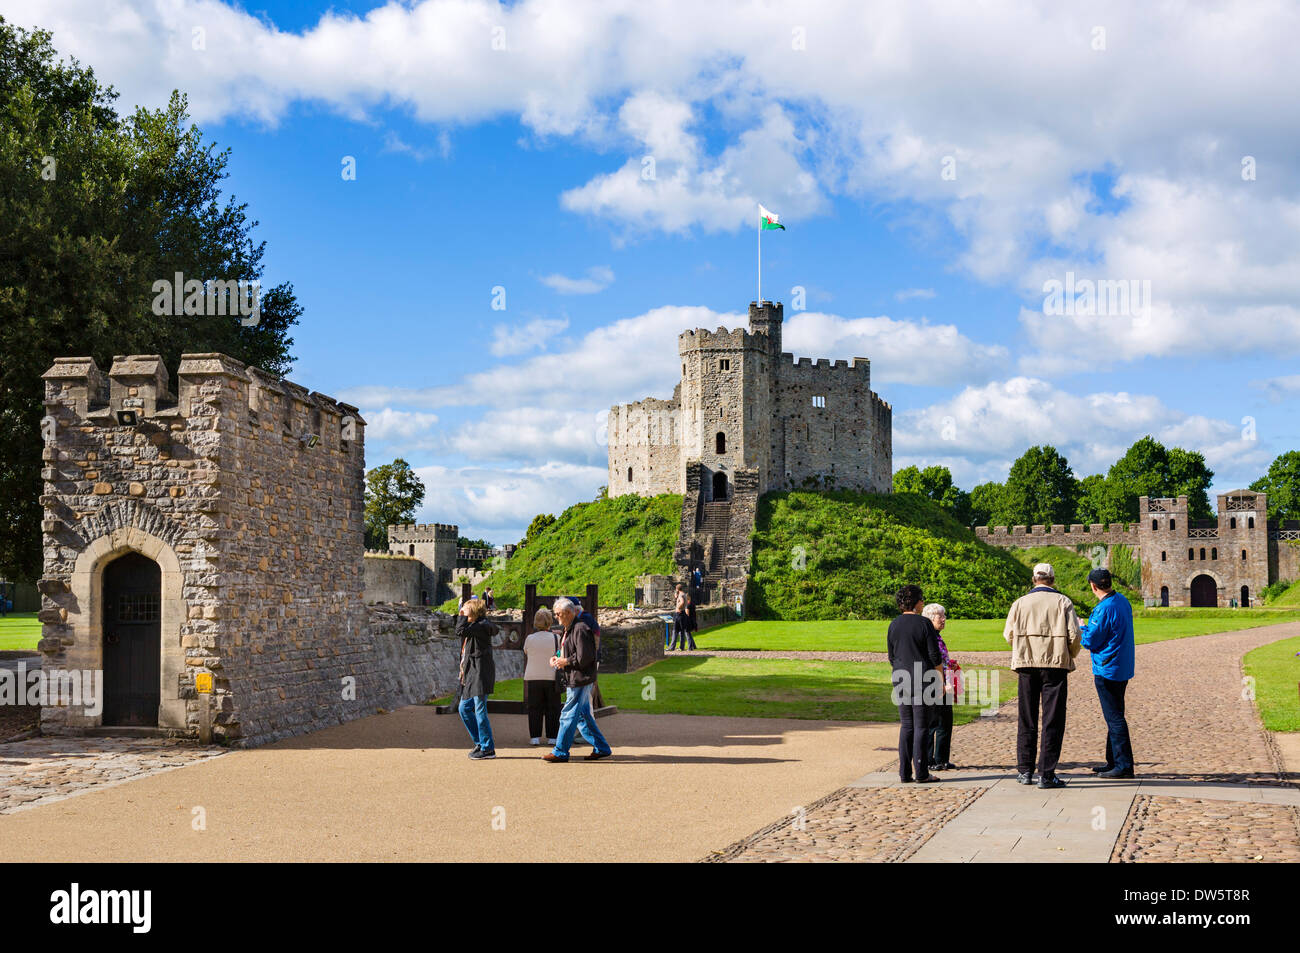 Visiteurs en face de la shell Norman se tenir à l'intérieur de château de Cardiff, Cardiff, South Glamorgan, Pays de Galles, Royaume-Uni Banque D'Images